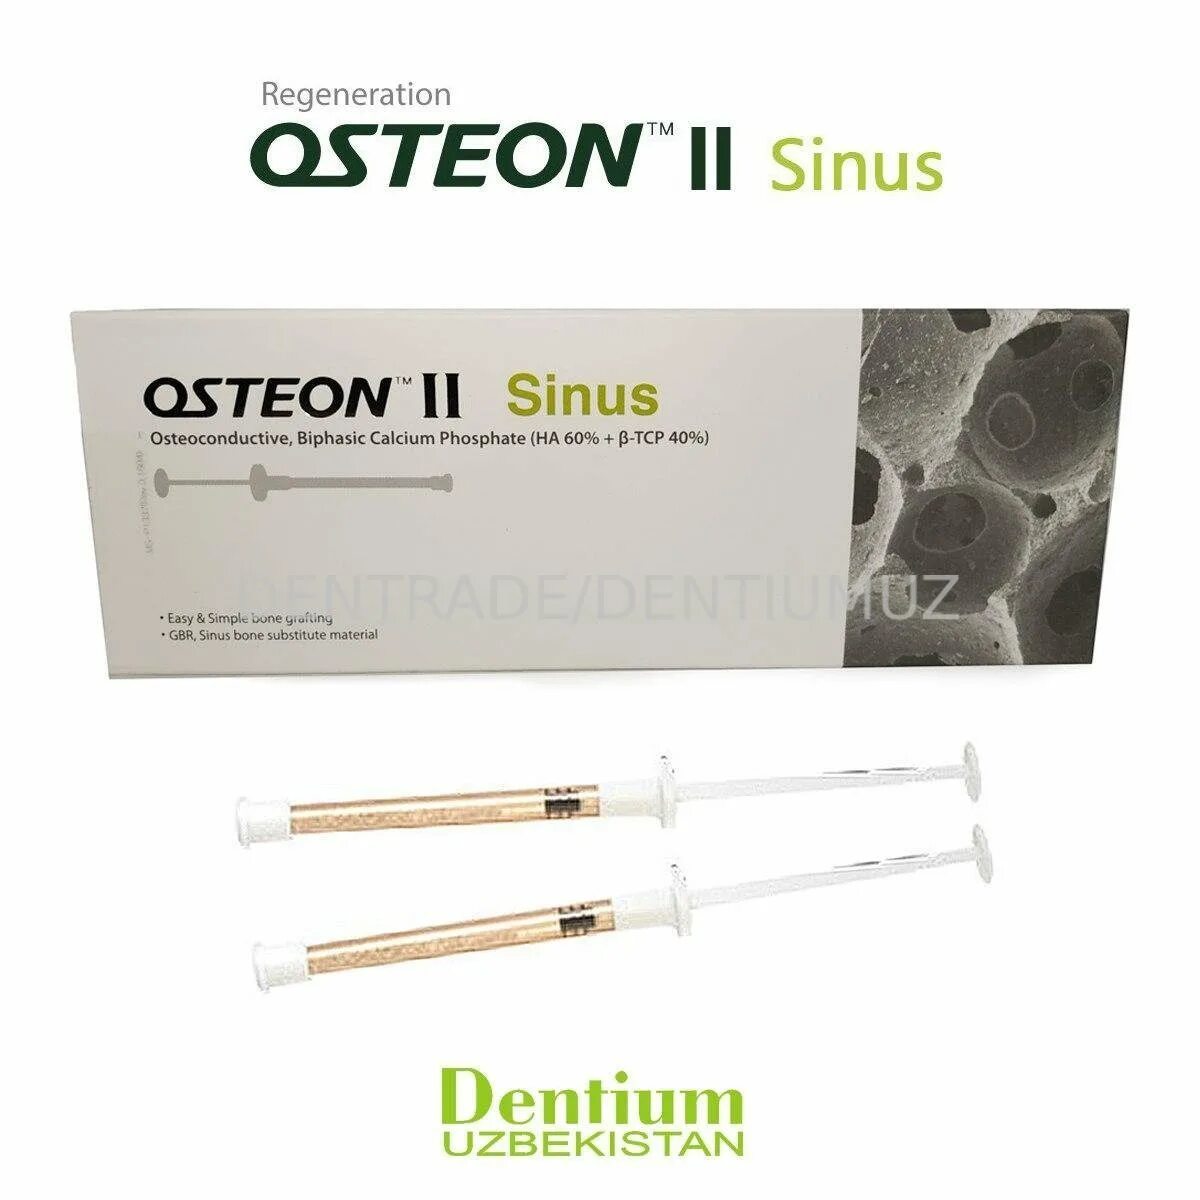 Остеон материал для синус-лифтинга шприц 0.2-0.5мм dt7g0205025ls. Osteon 2 костный материал. Остеон 2 в шприце. Мембраны Osteon. Остеон 2